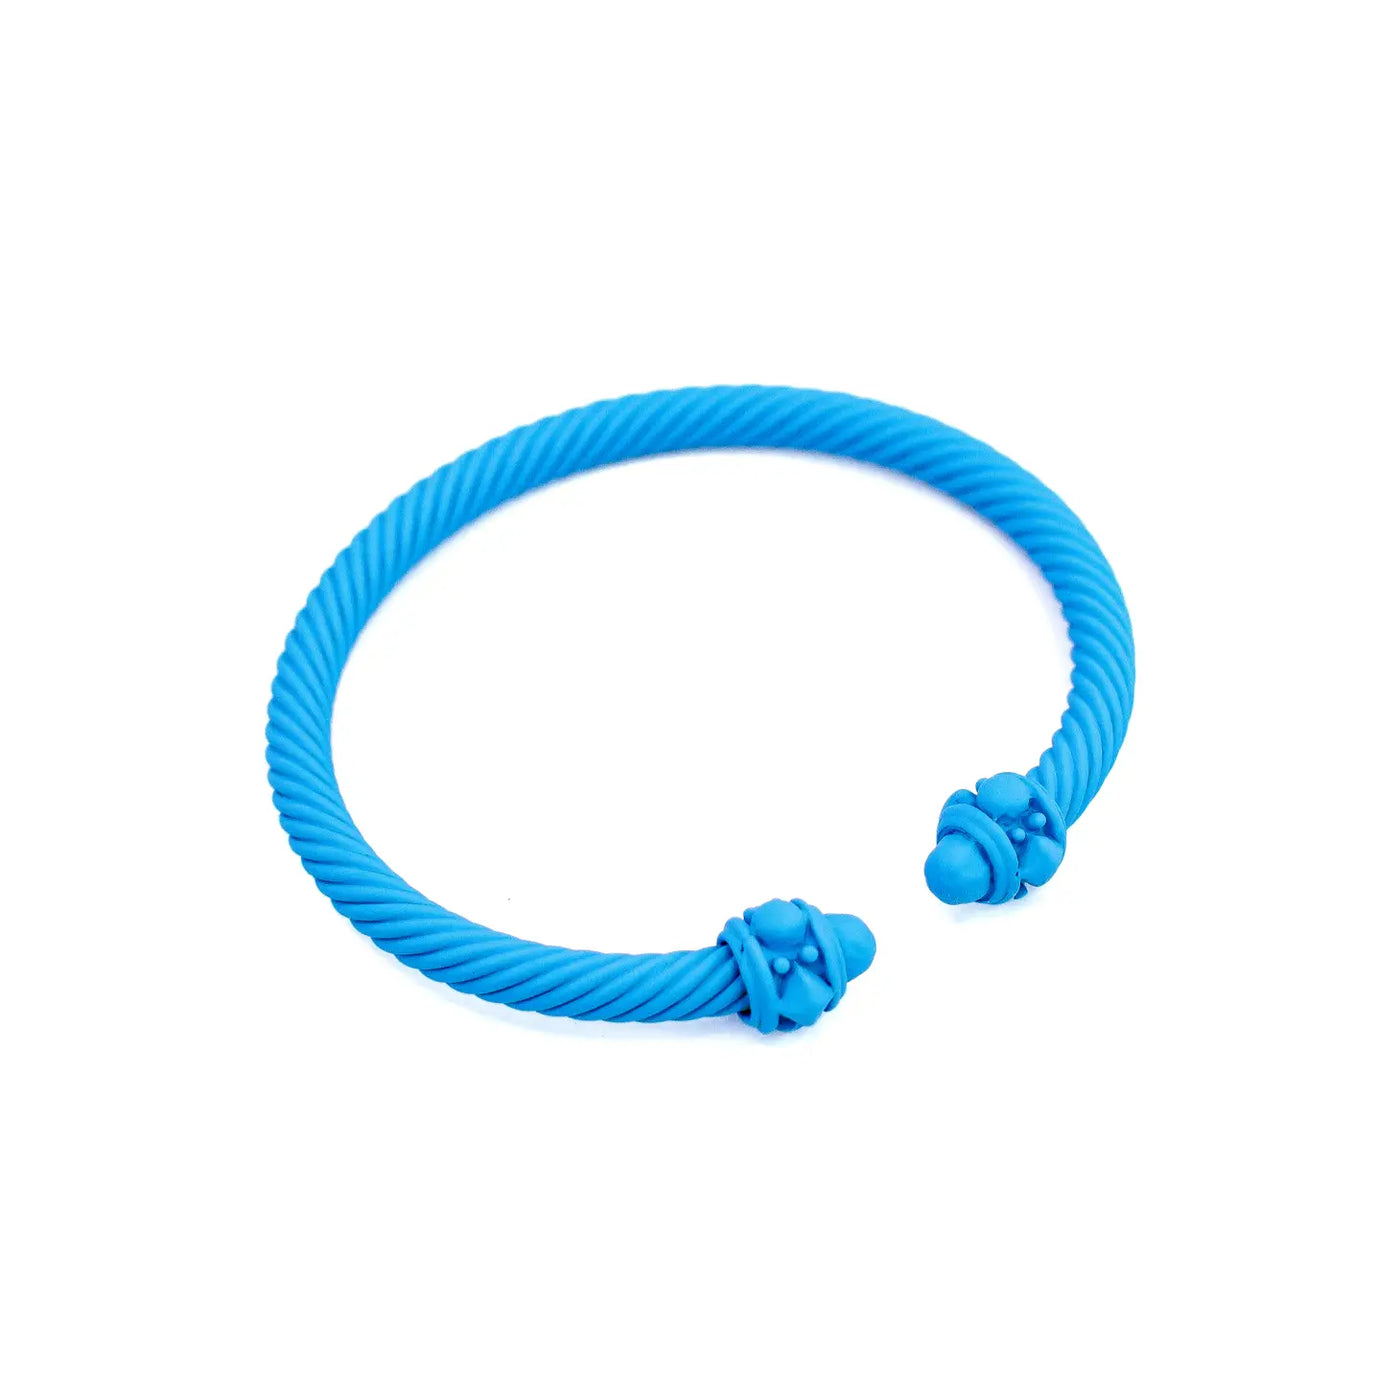 Cable Cuff Bracelet (Sky Blue)